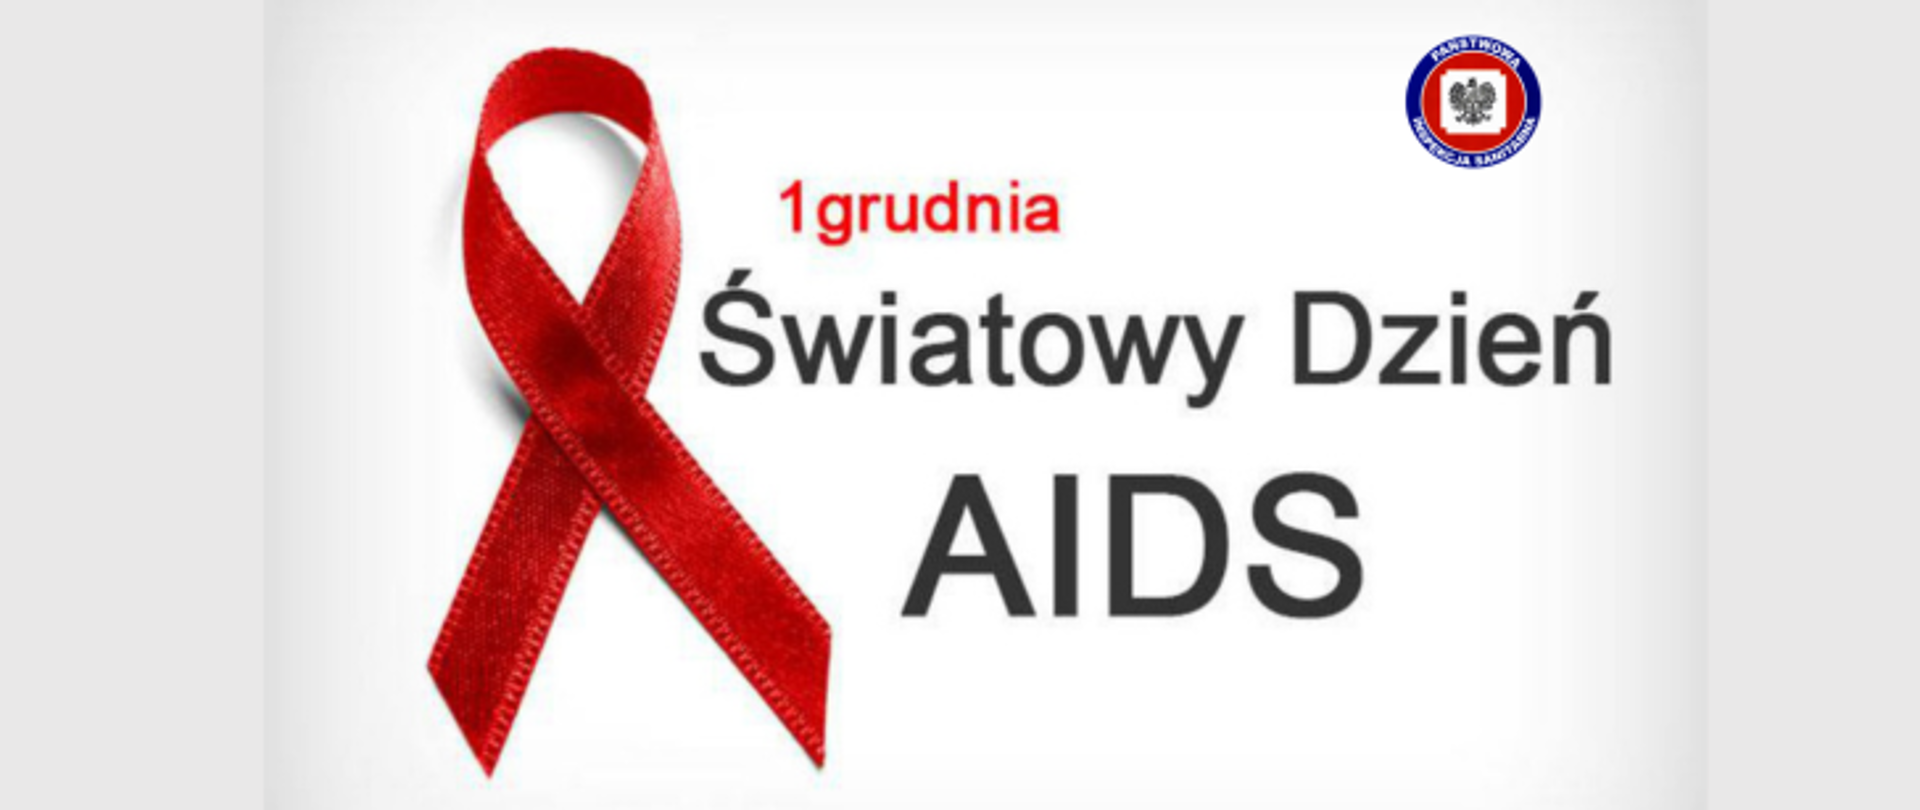 Na szarym tle z lewej strony widoczna jest czerwona wstążeczka, na środku widoczny napis - "1 grudnia - Światowy Dzień AIDS", w prawym górnym rogu widoczne logo Państwowej Inspekcji Sanitarnej.